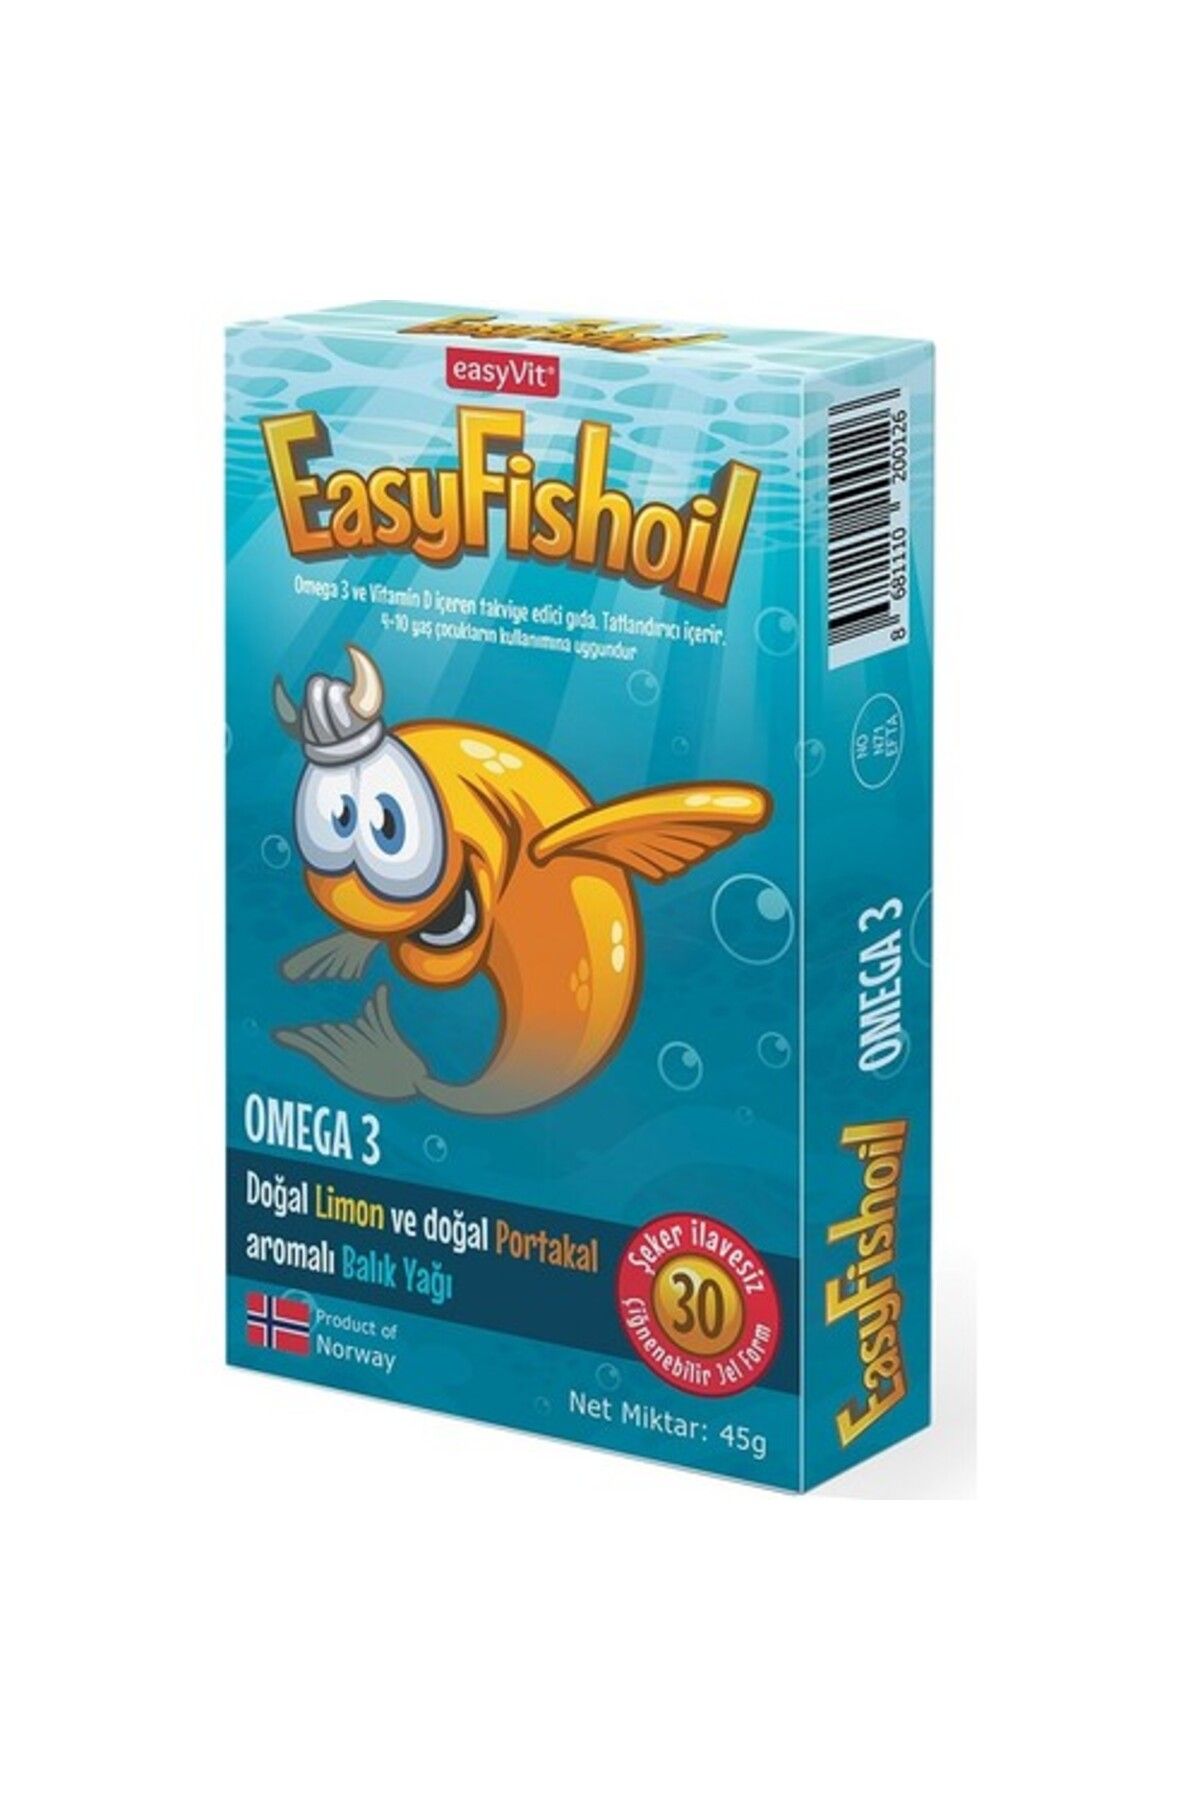 Easy Fishoil Easyfishoil Omega Balık Yağı 30 Adet Çiğnenebilir Jel Tablet